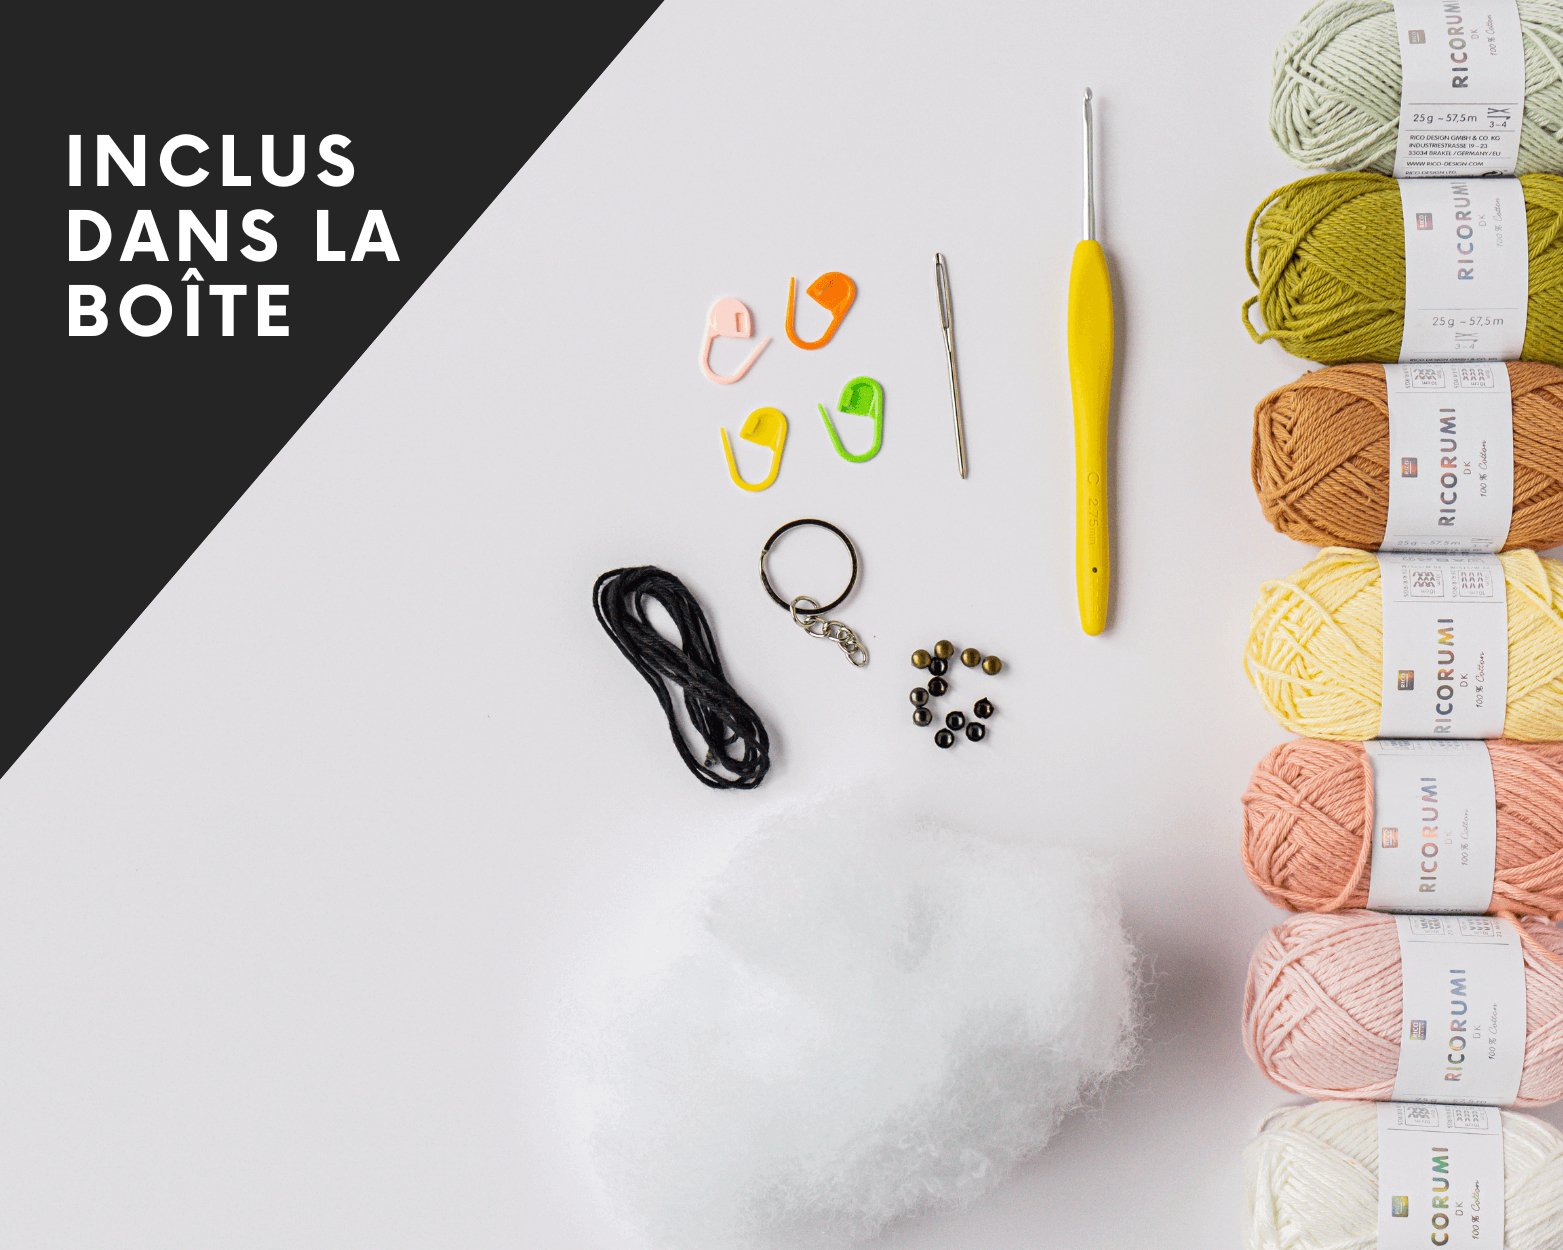 Le kit "LES AMIGURUMIS" - Crochetmilie